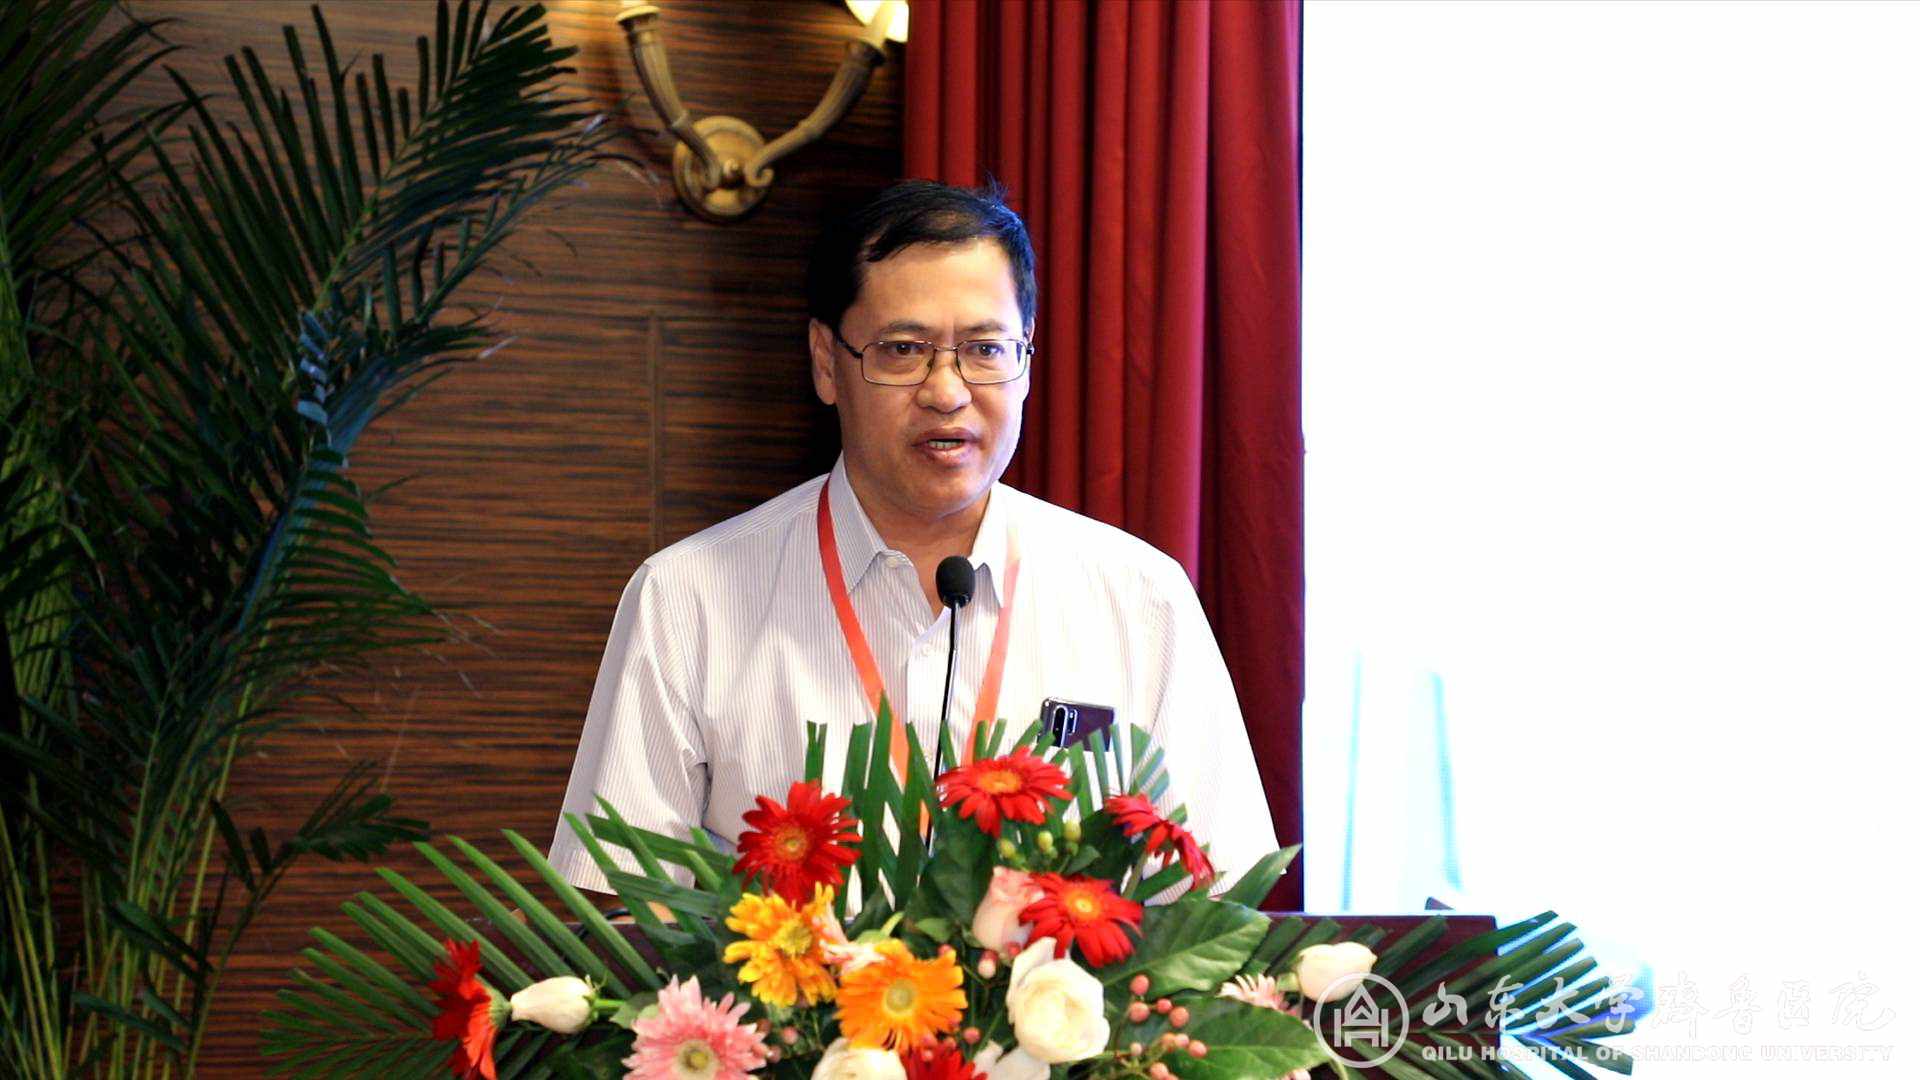 齐峰教授当选为首届山东省研究型医院协会麻醉治疗学专业委员会主任委员